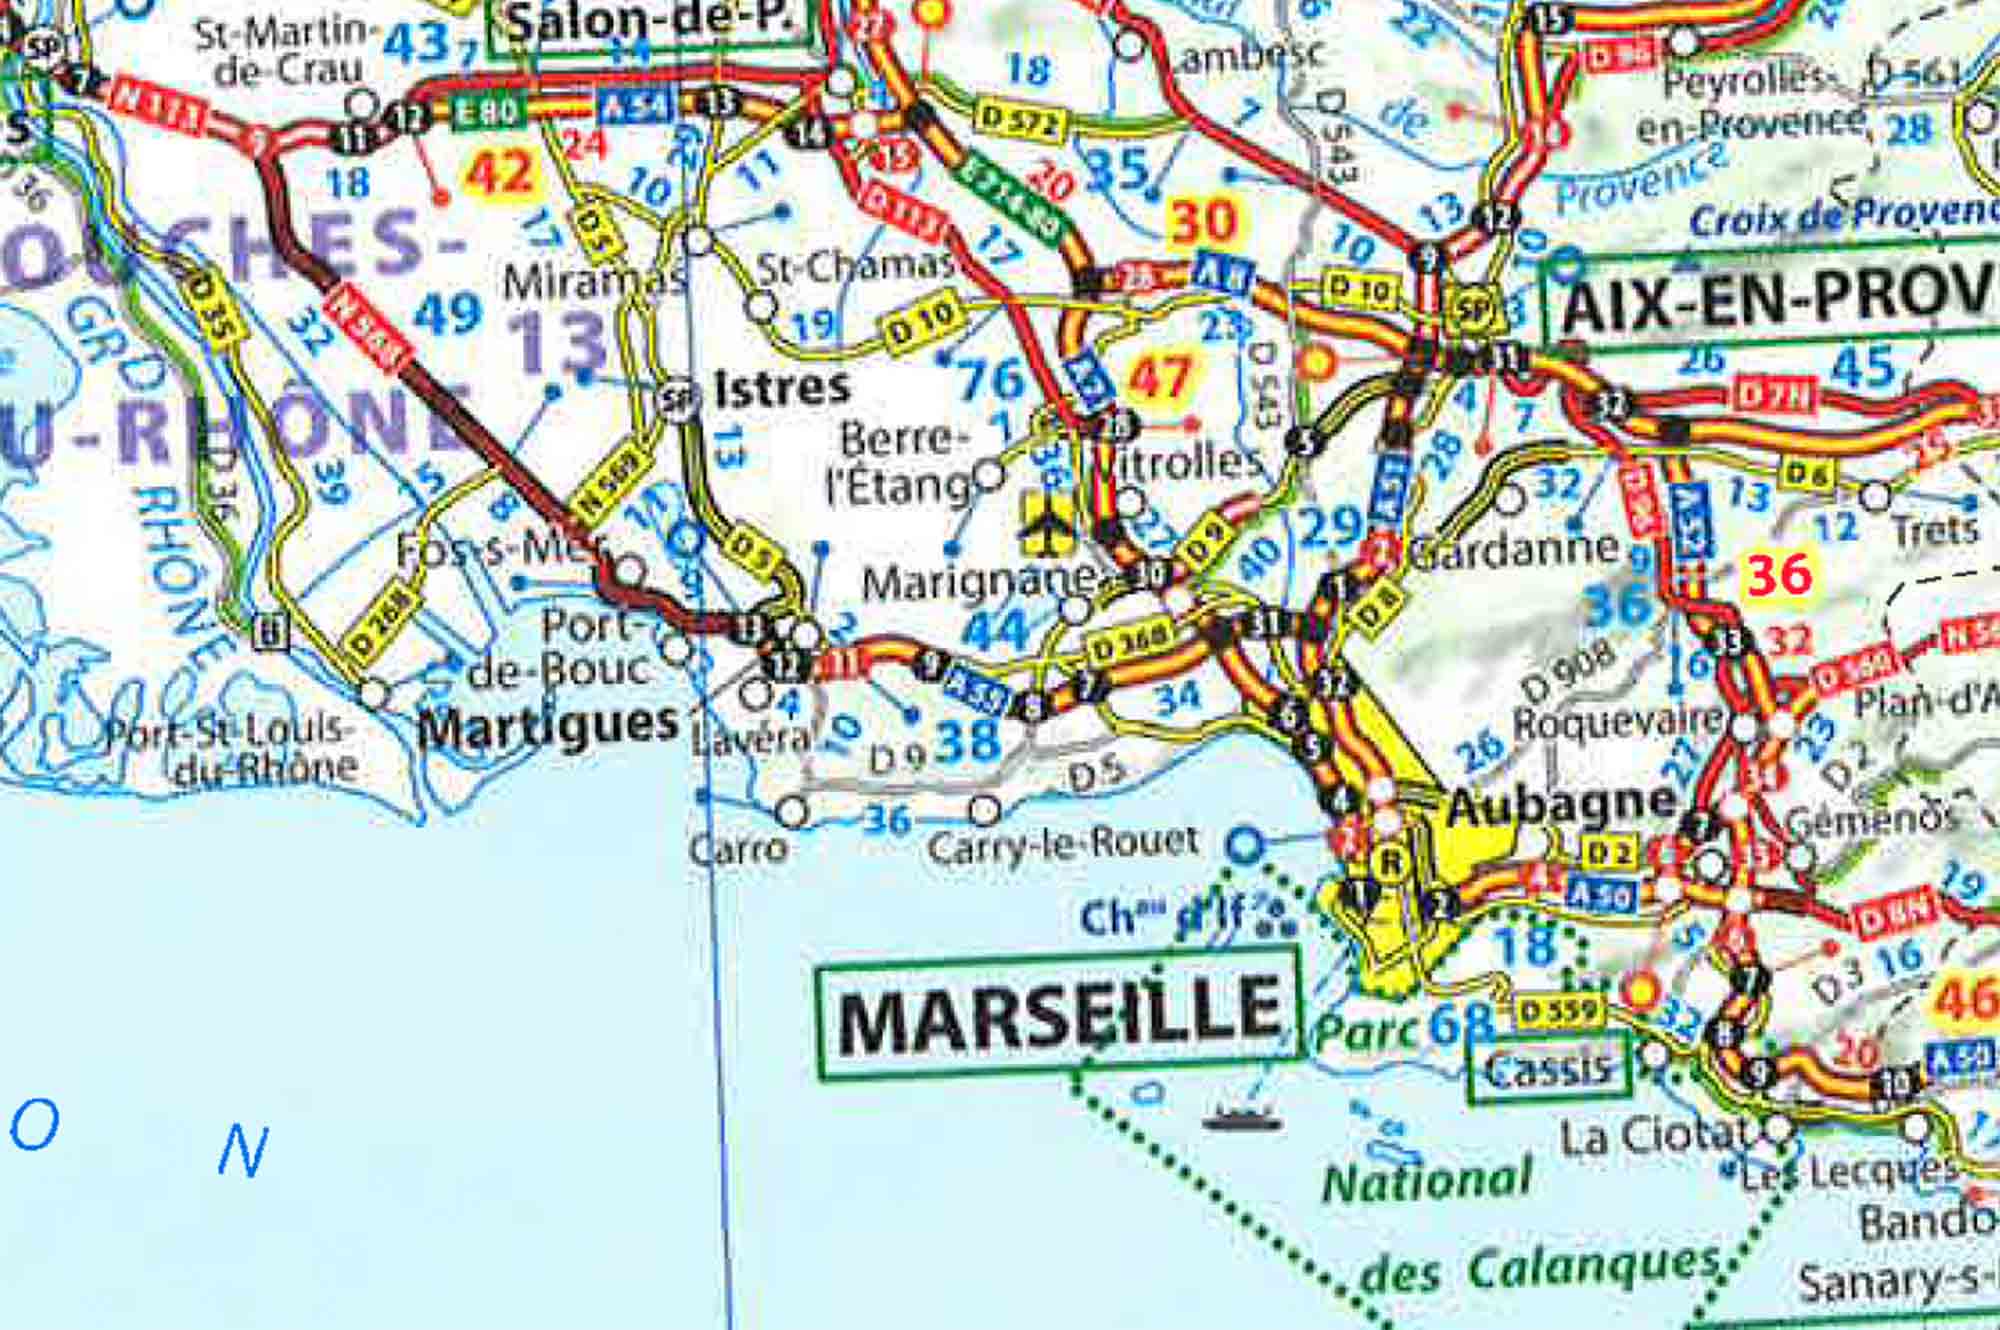 Manifesta 13 Marseille - Manifesta - Marseille - Pamparigouste